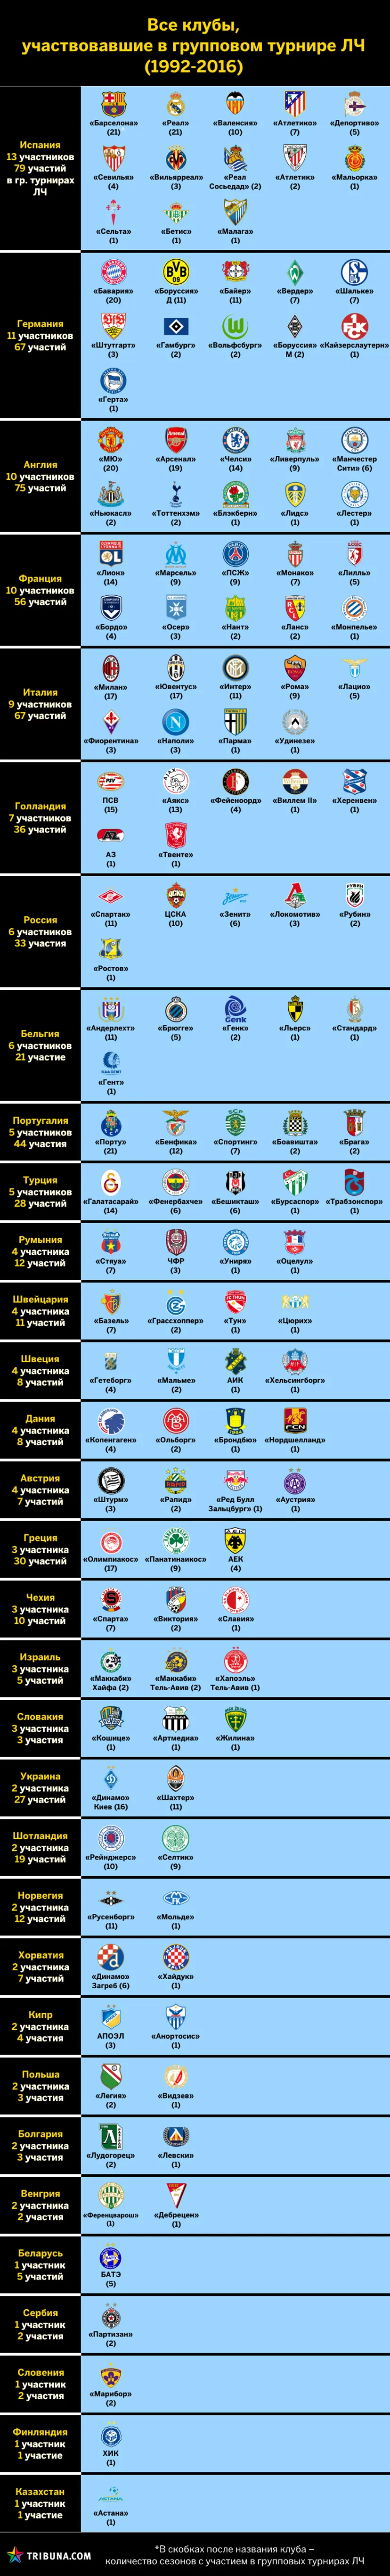 Сколько клубов представляли свои страны в Лиге чемпионов